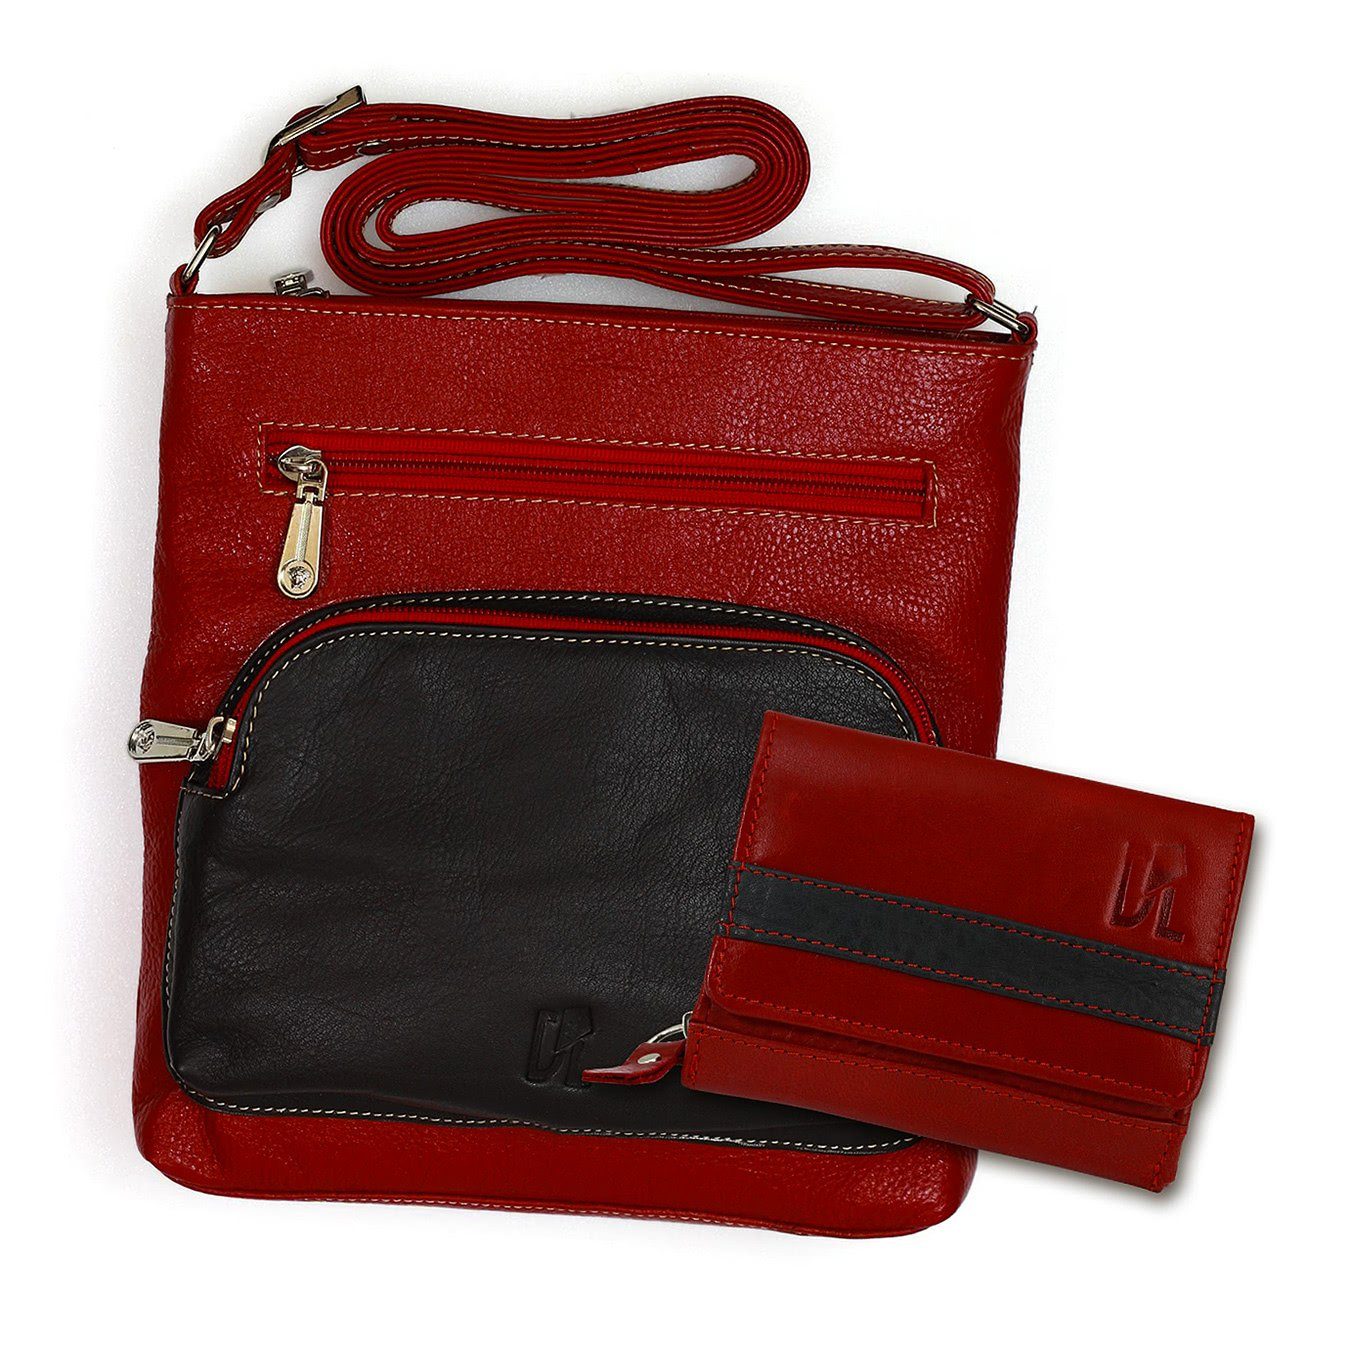 DrachenLeder Handtasche Umhängetasche + Geldbörse Set Leder rot (Handtasche, 2-tlg), Handtasche, Geldbörse Echtleder, rot, schwarz